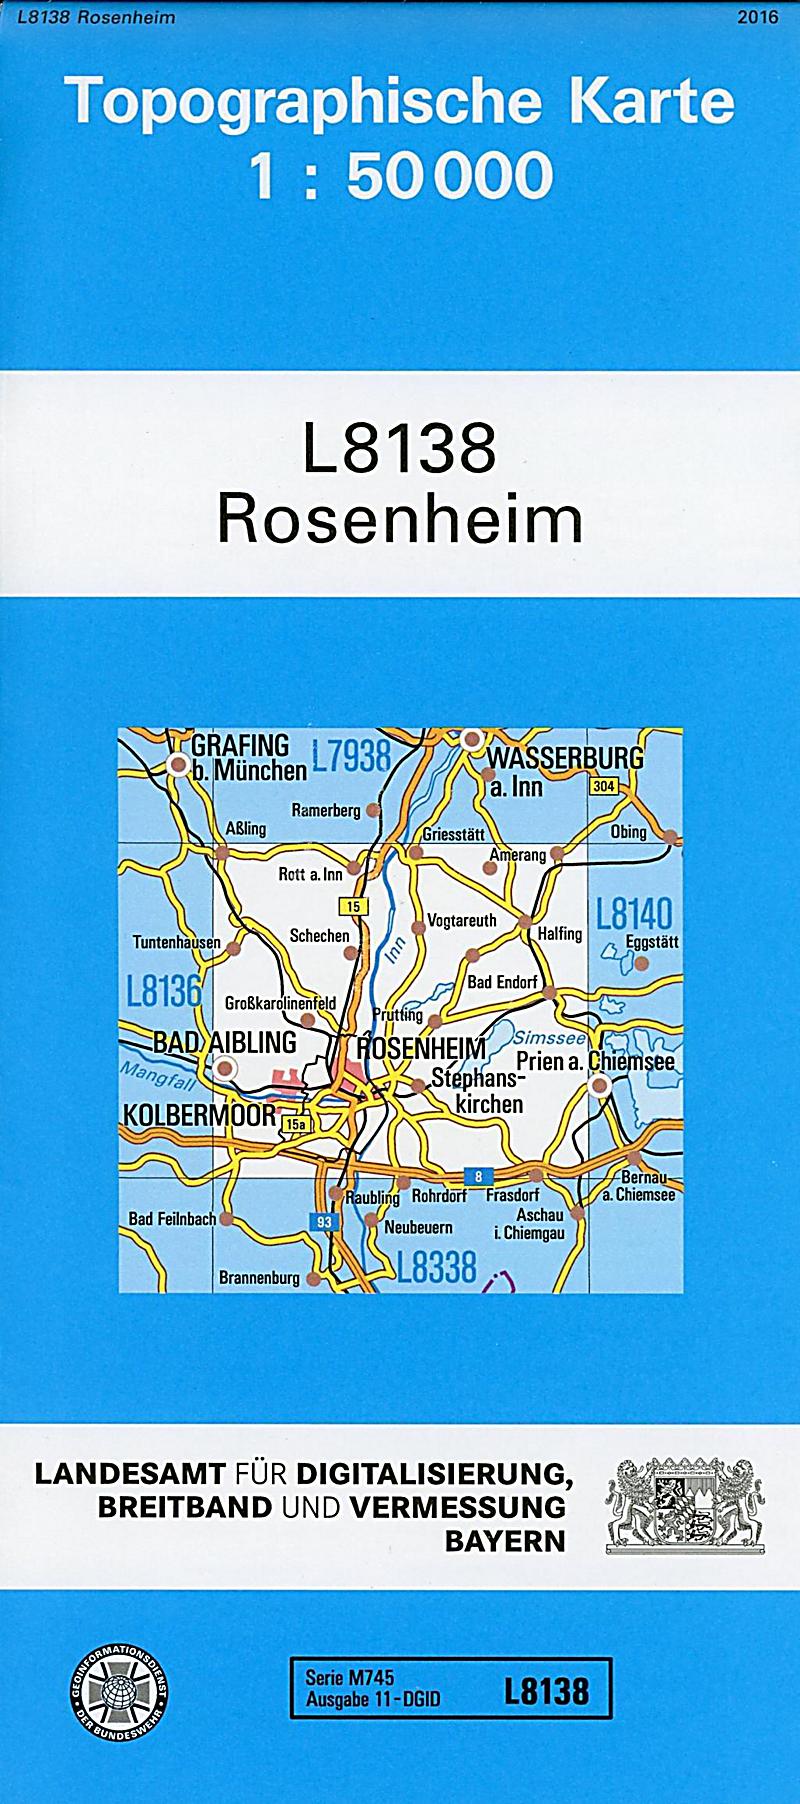 Topographische Karte Bayern Rosenheim Buch - Weltbild.de